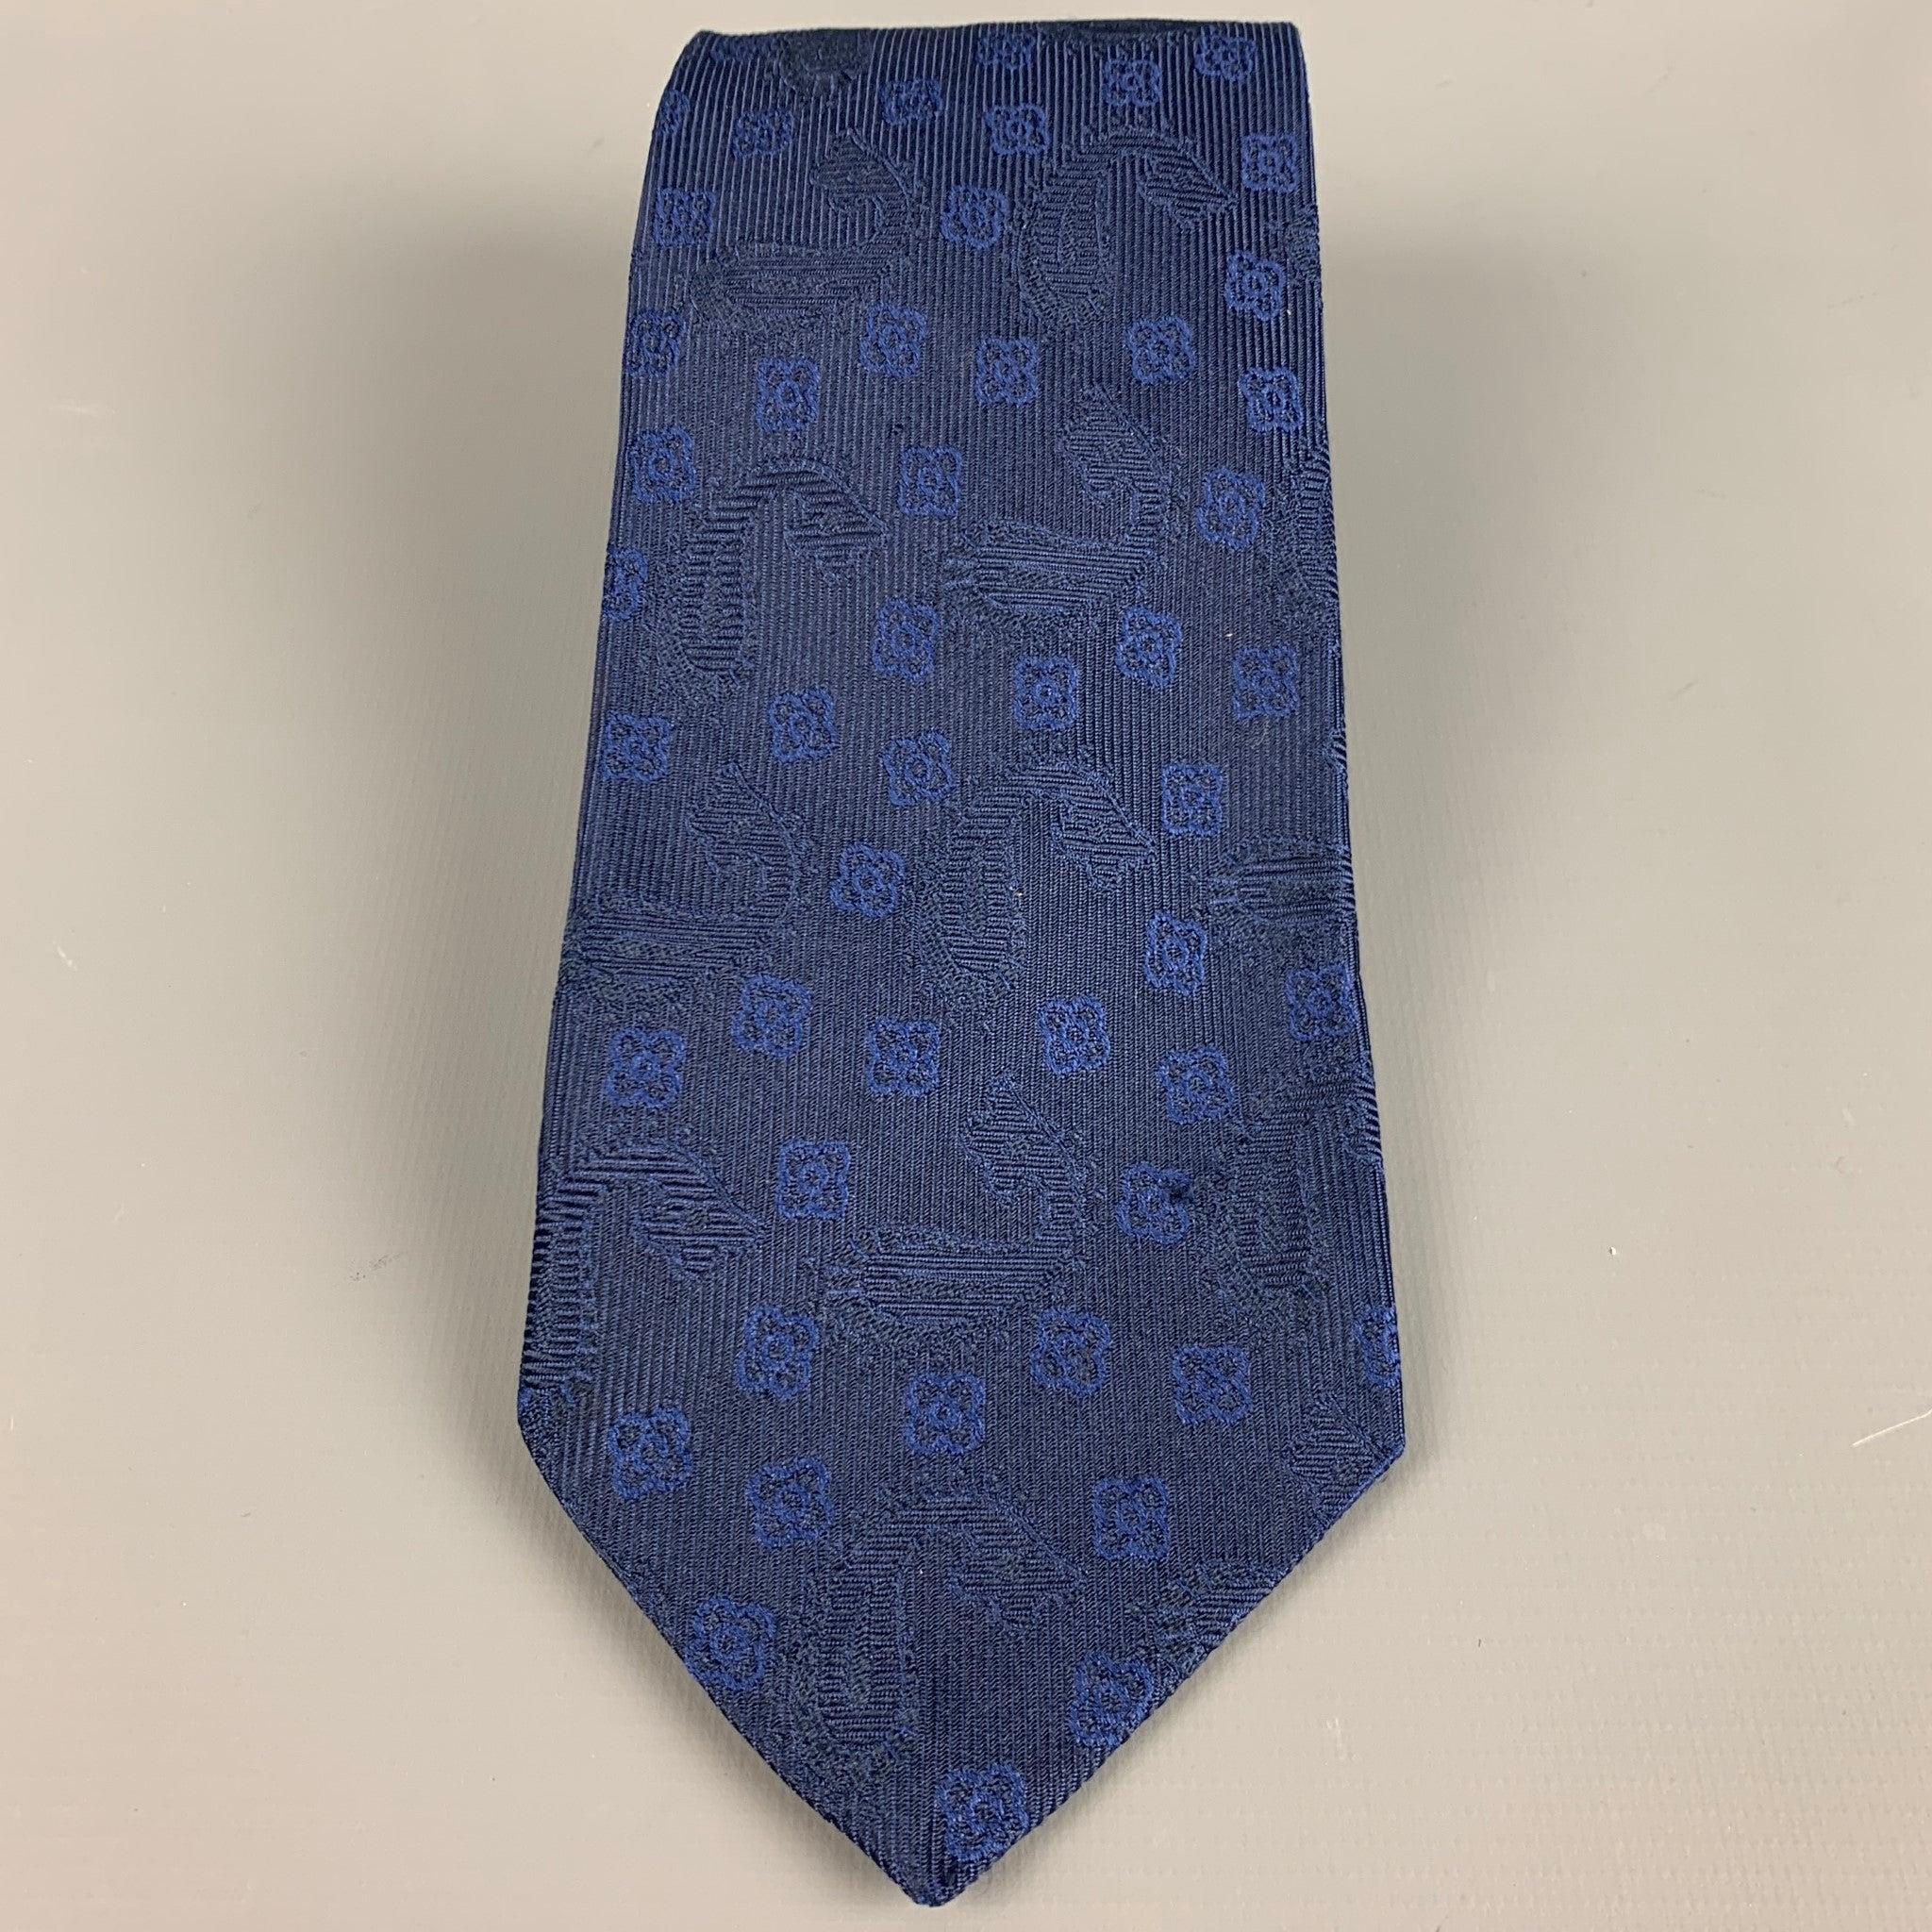 ETRO-Krawatte aus marineblauem Seidenjacquard mit abstraktem Blumenmuster und Paisleydetails. Hergestellt in Italien.
Sehr guter gebrauchter Zustand. Mäßige Gebrauchsspuren.
 

Abmessungen: 
  
Breite: 3,5 Zoll Länge: 59 Zoll 
  
  
Referenz: